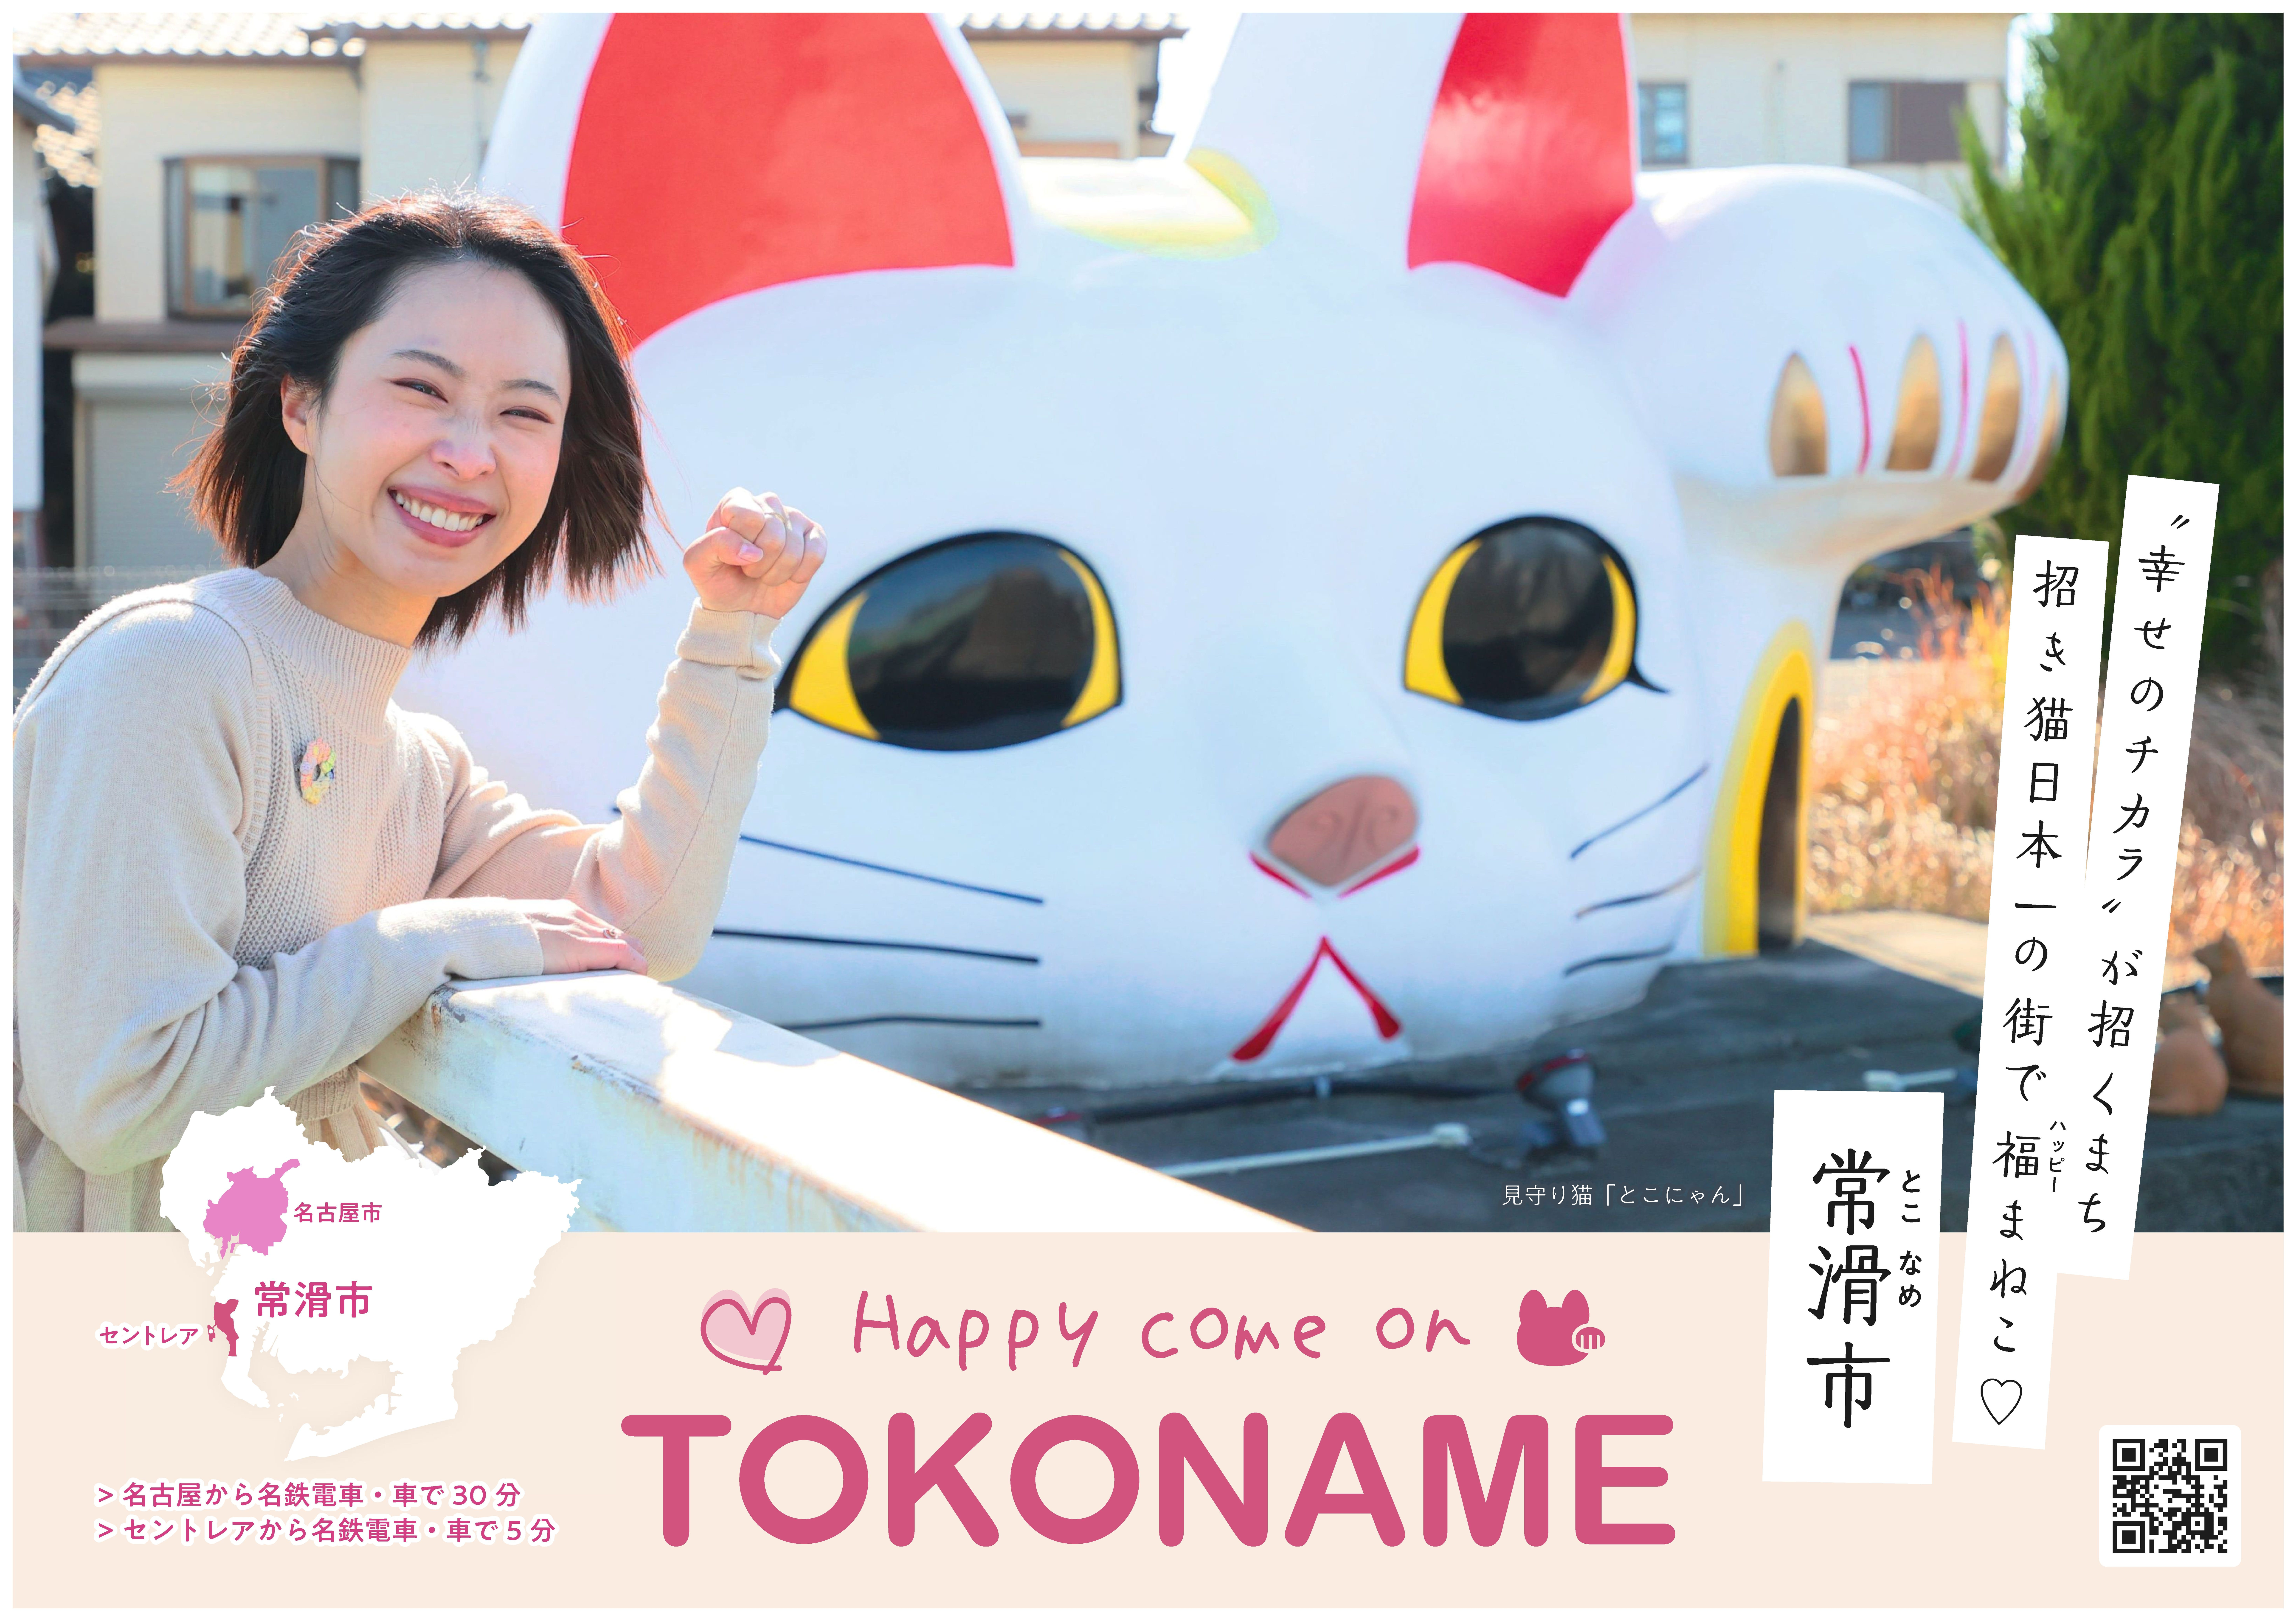 とこなめ観光ナビで「Happy Come On TOKONAME」をキーワードに常滑市の魅力発信中♪